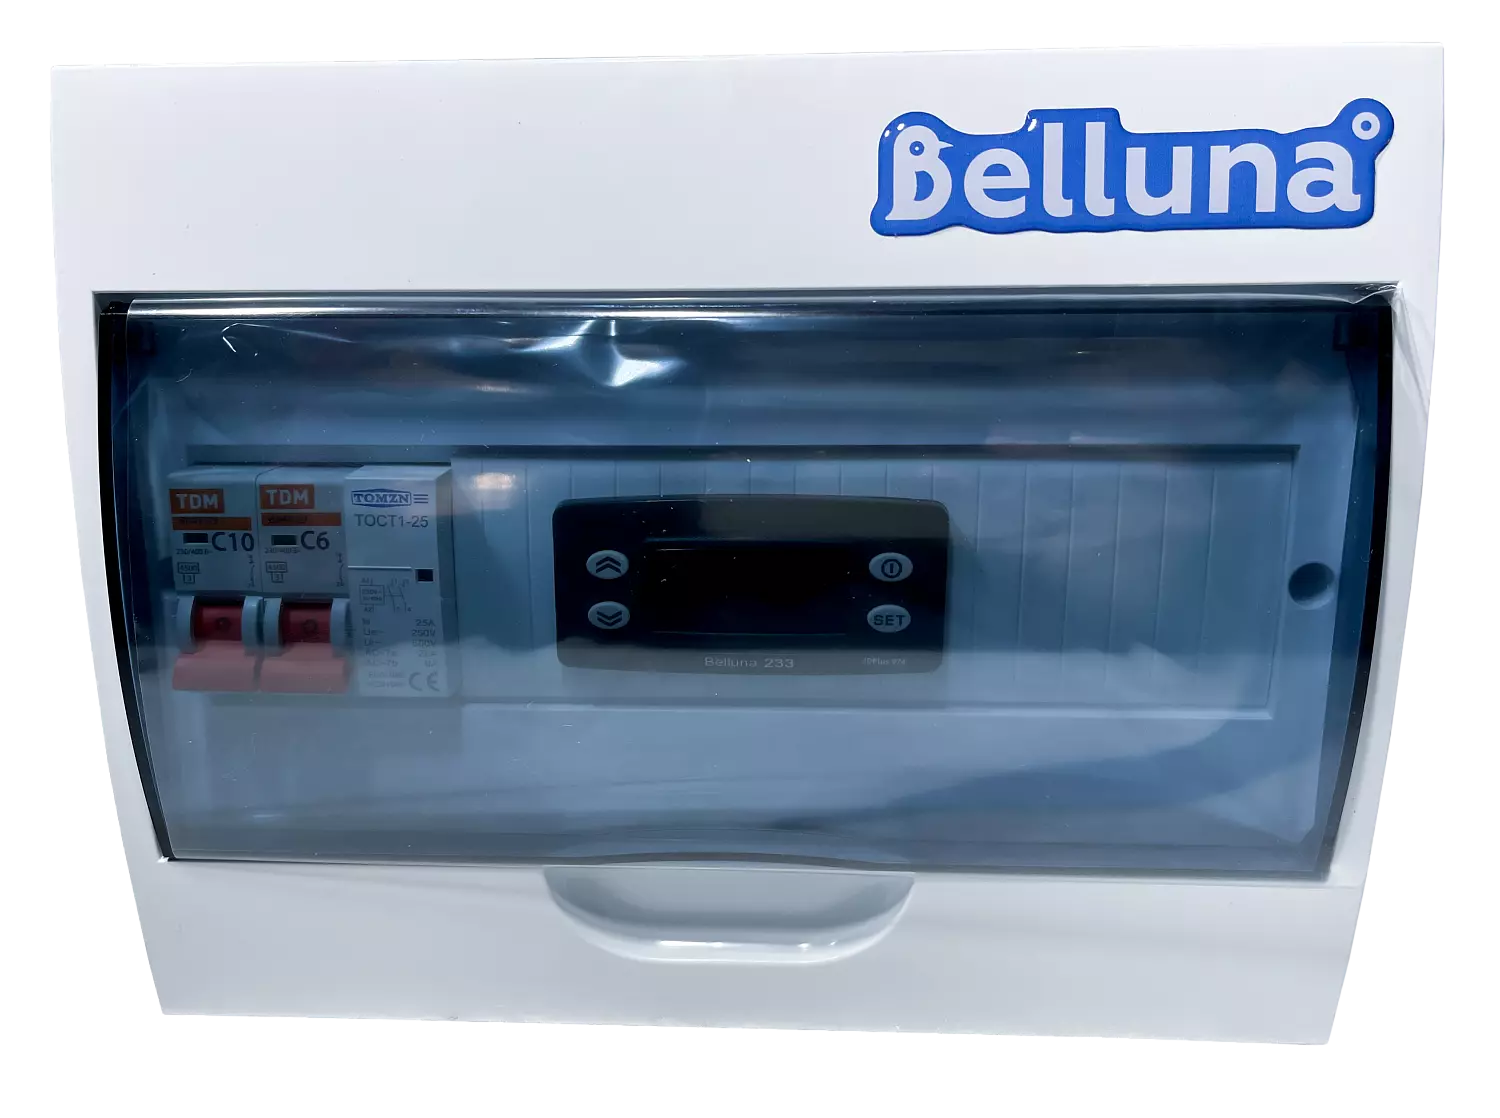 сплит-система Belluna S226 W Липецк